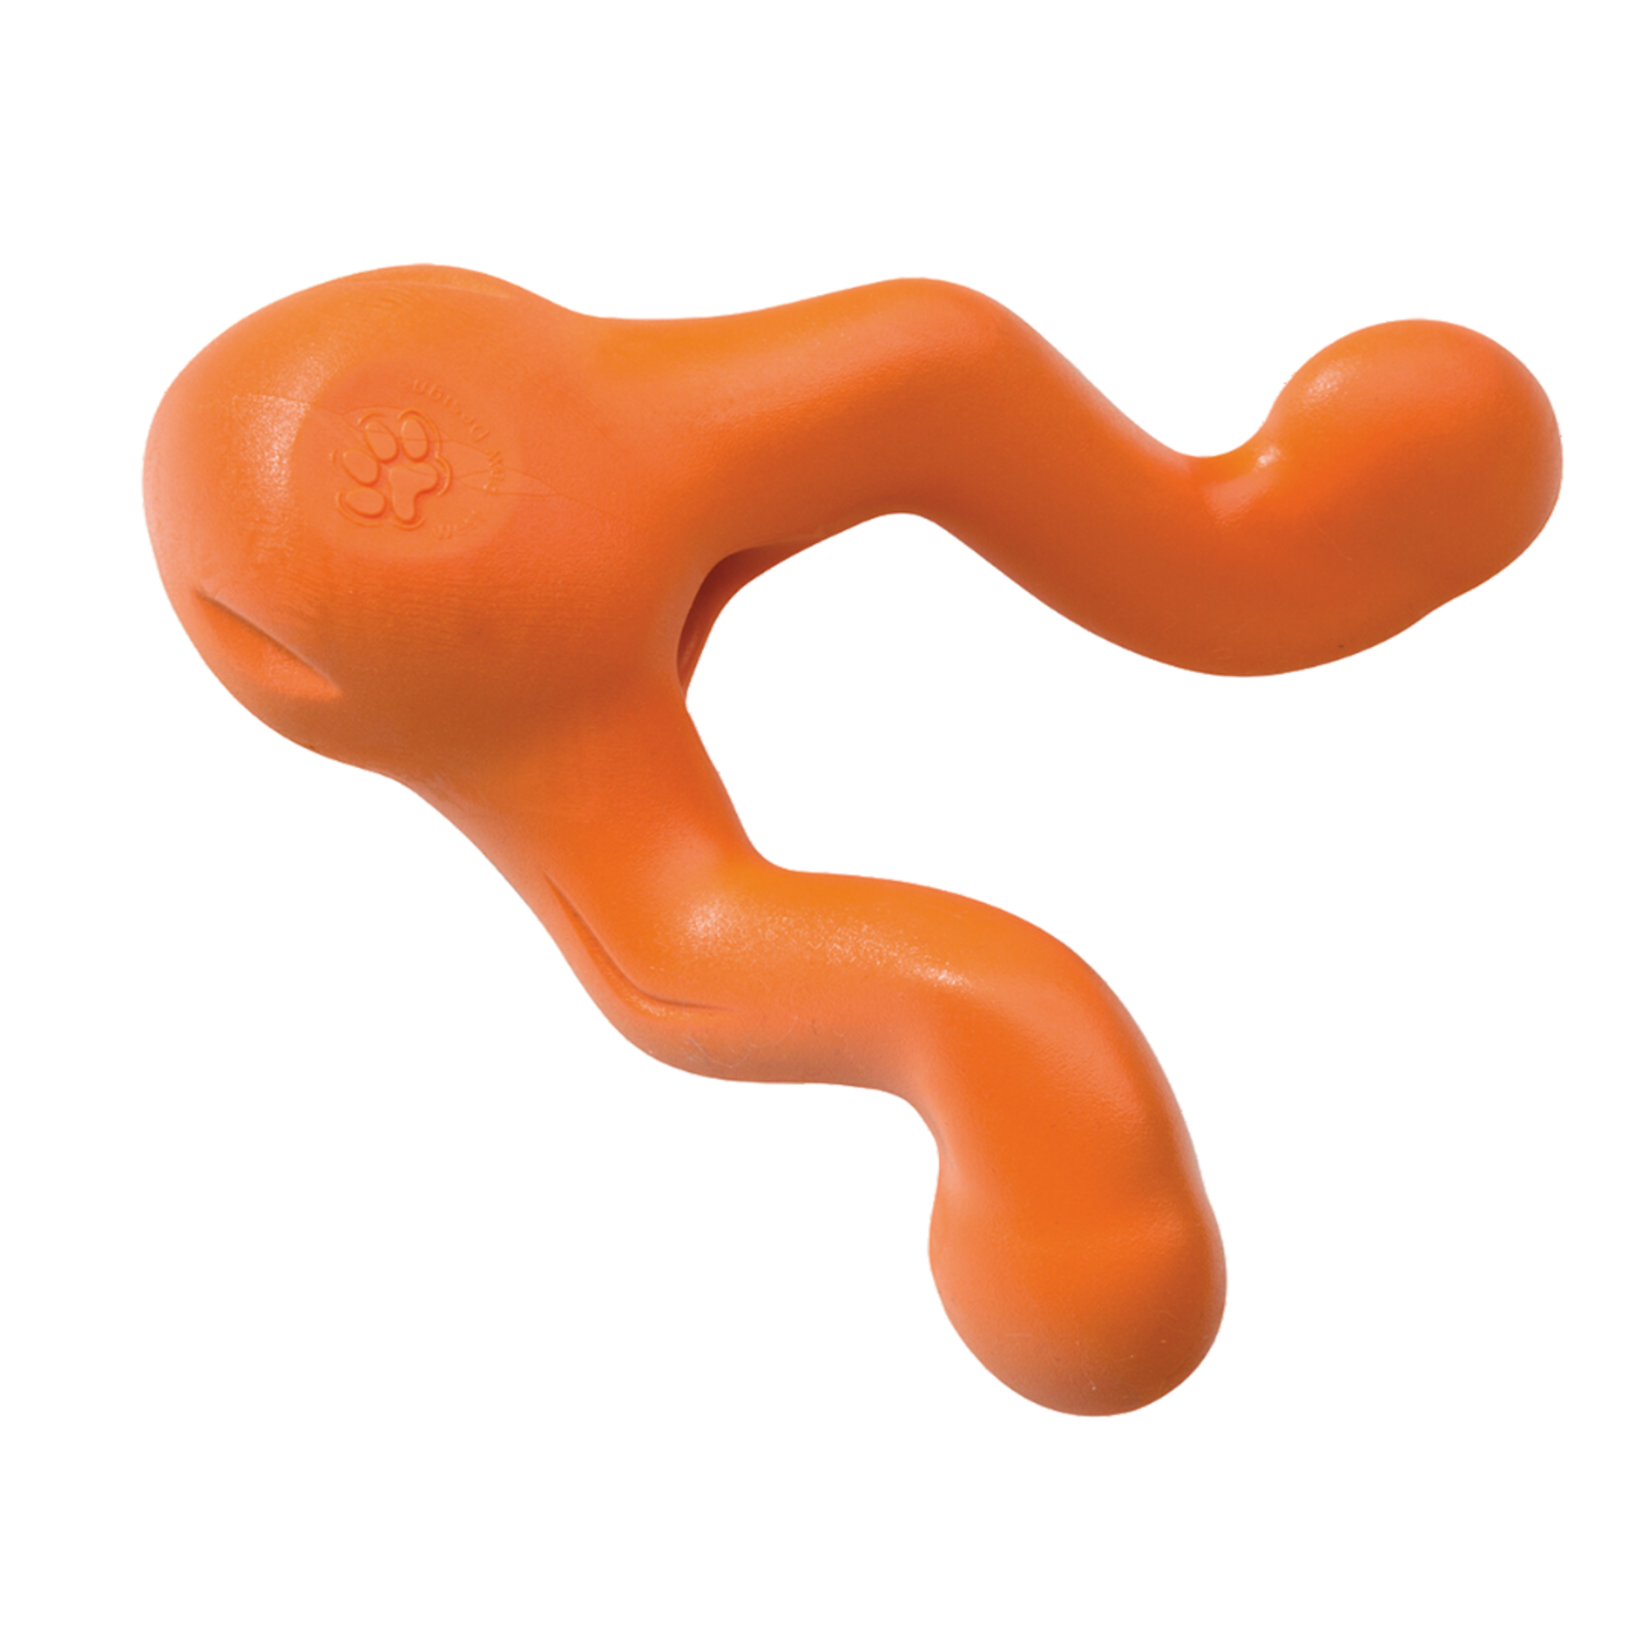 West PawTizzi Small 4.5" - orange dog toy